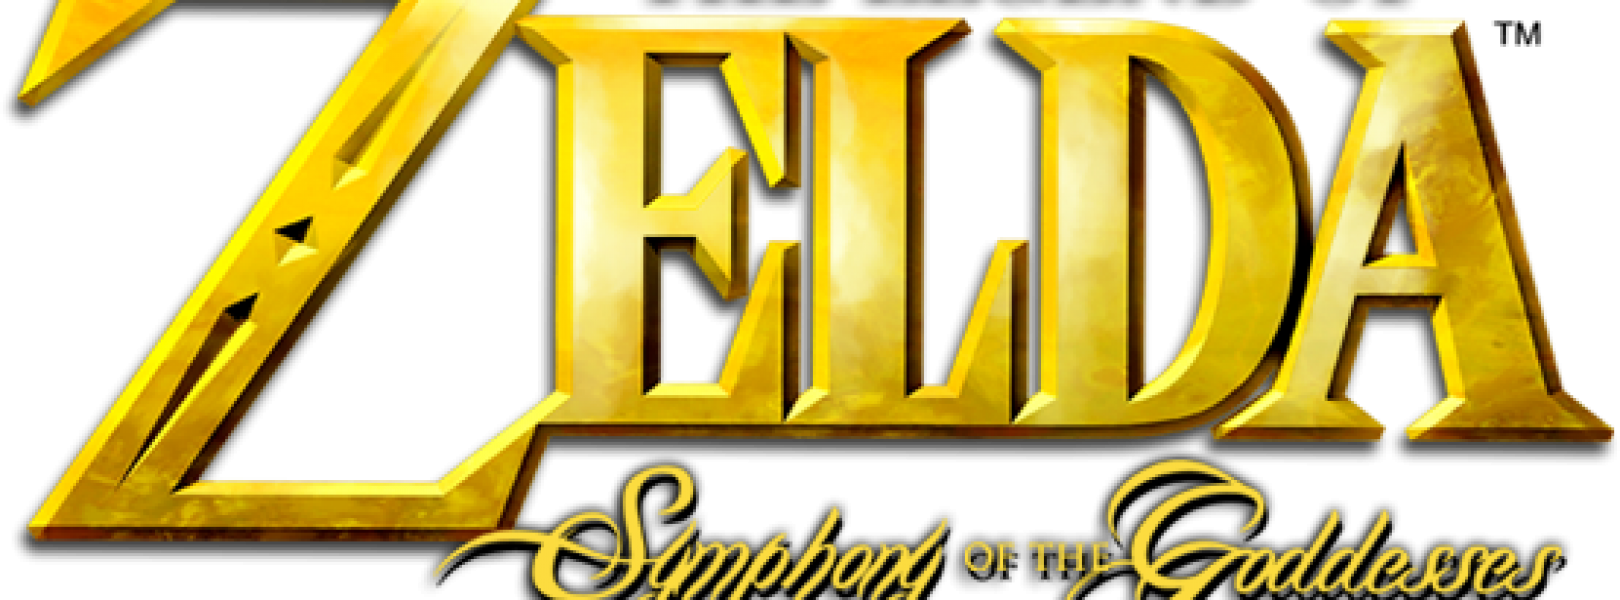 The Legend Of Zelda - Legend Of Zelda: Symphony Of The Goddesses Clipart (1620x600), Png Download